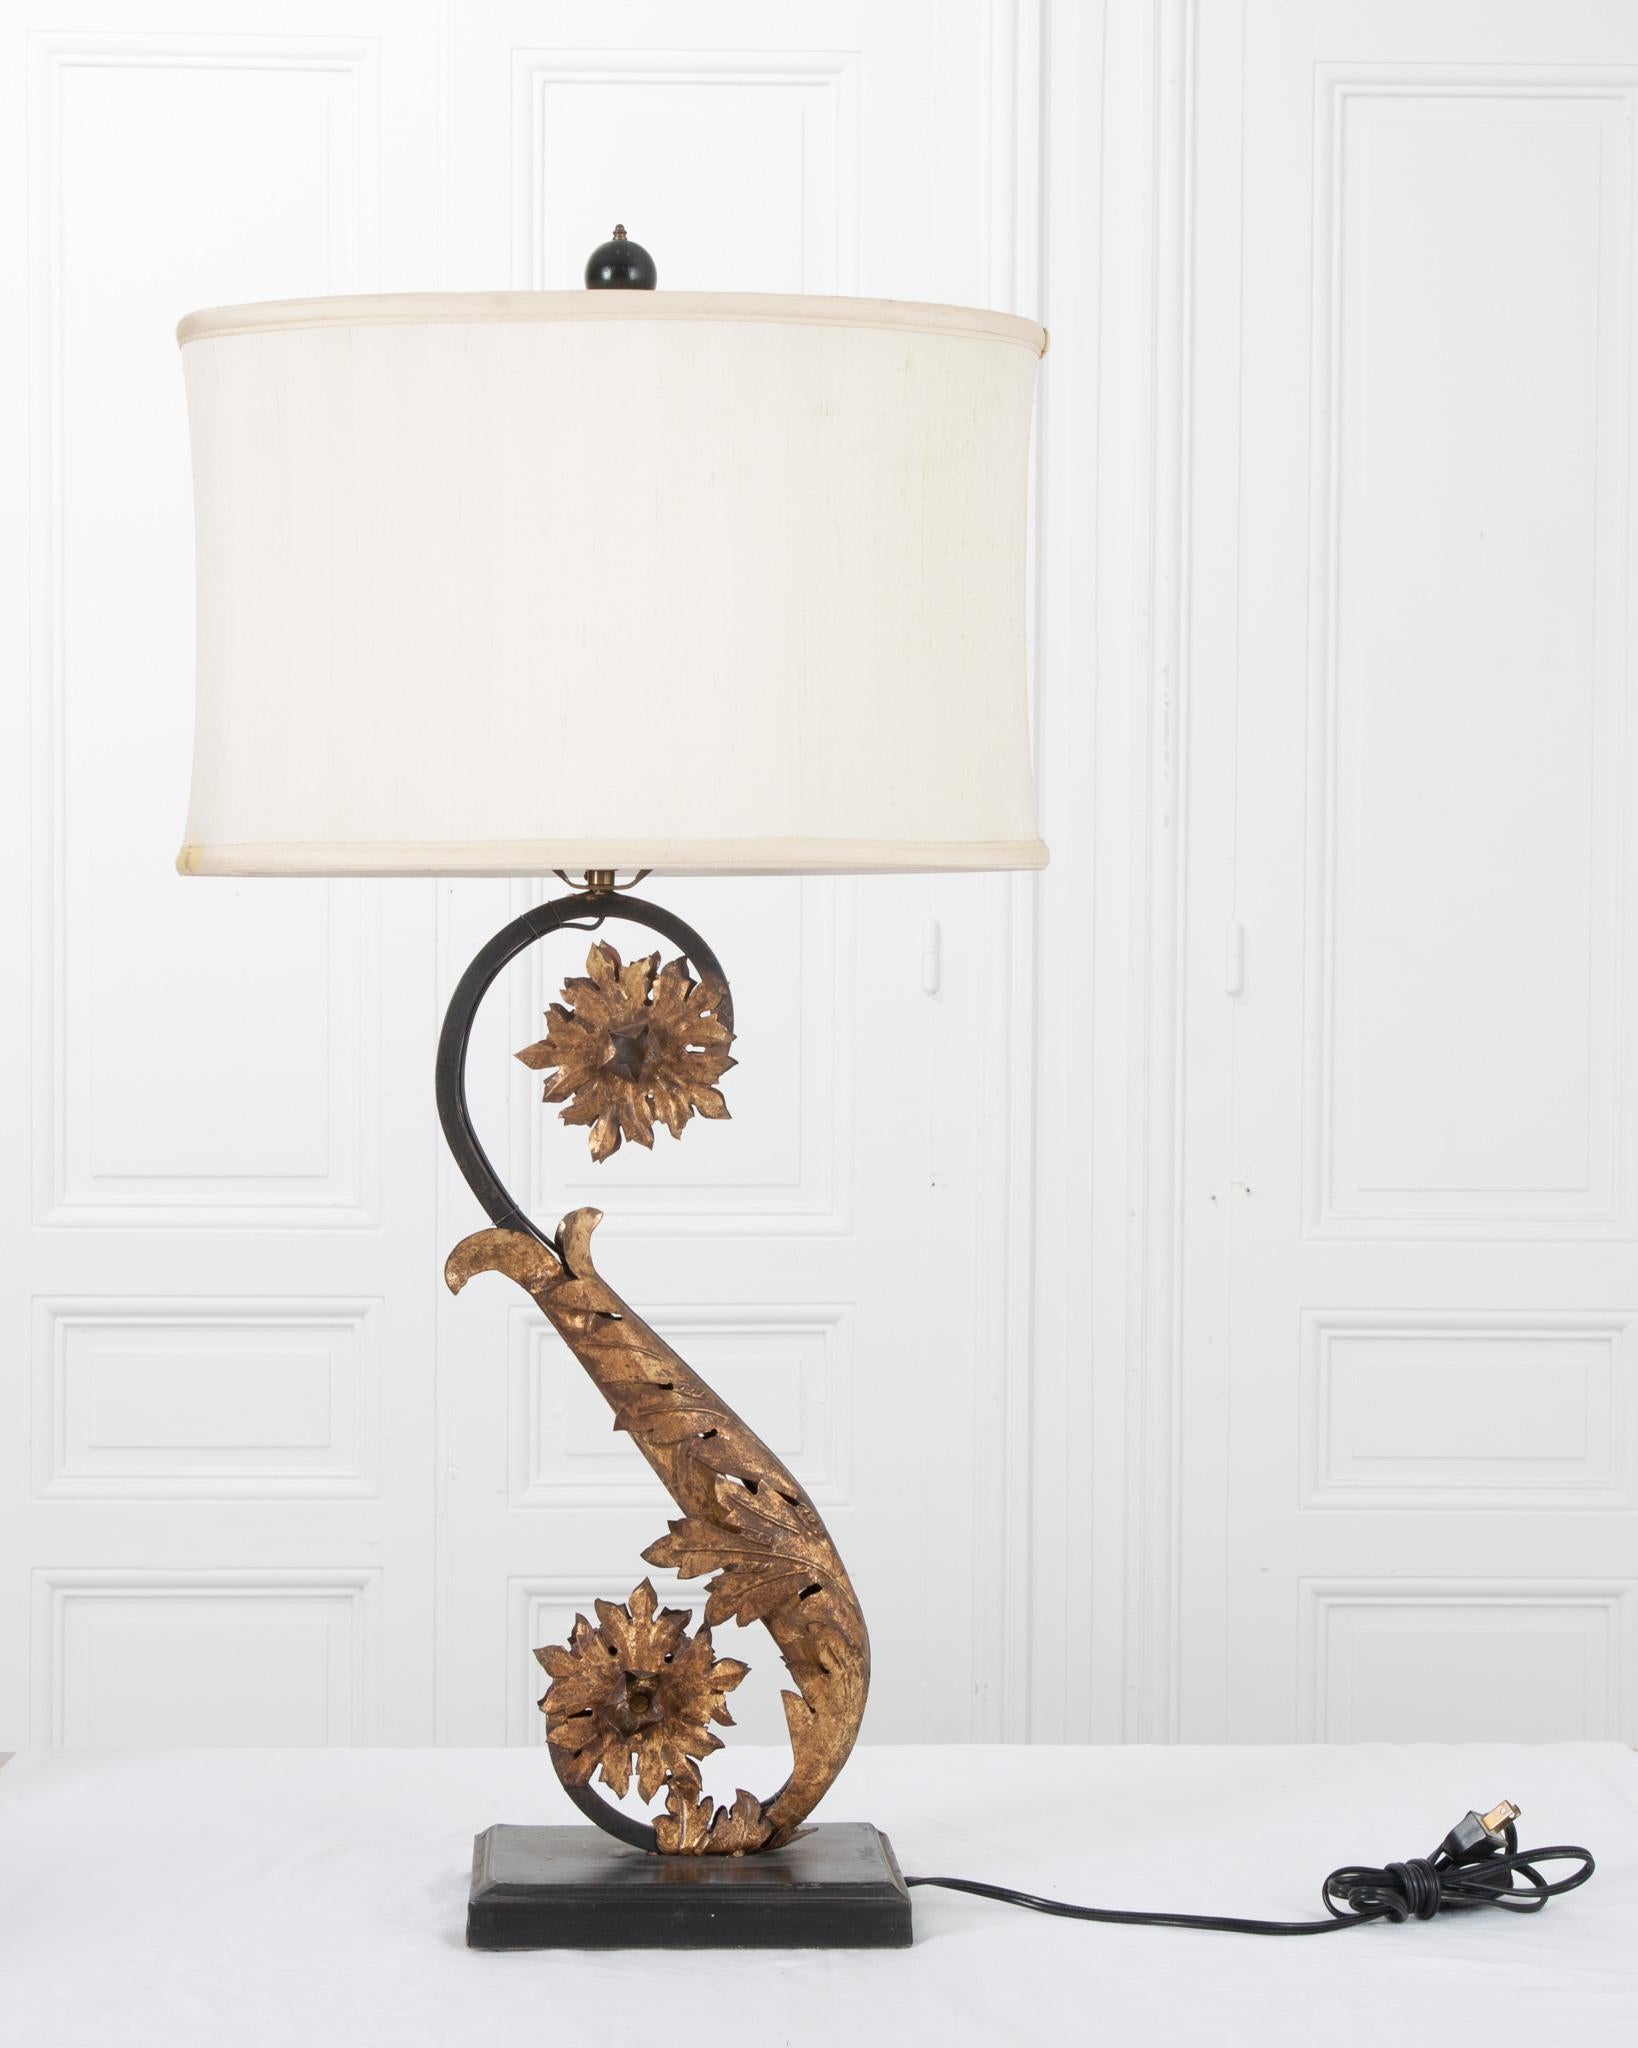 Diese elegante italienische Reproduktionslampe passt perfekt zu moderner oder antiker Wohnkultur! Ausgestattet mit einem ovalen Seidenschirm nach Maß. Die Lampe weist detaillierte vergoldete Blätter und Blumen auf, die sich um den S-förmigen